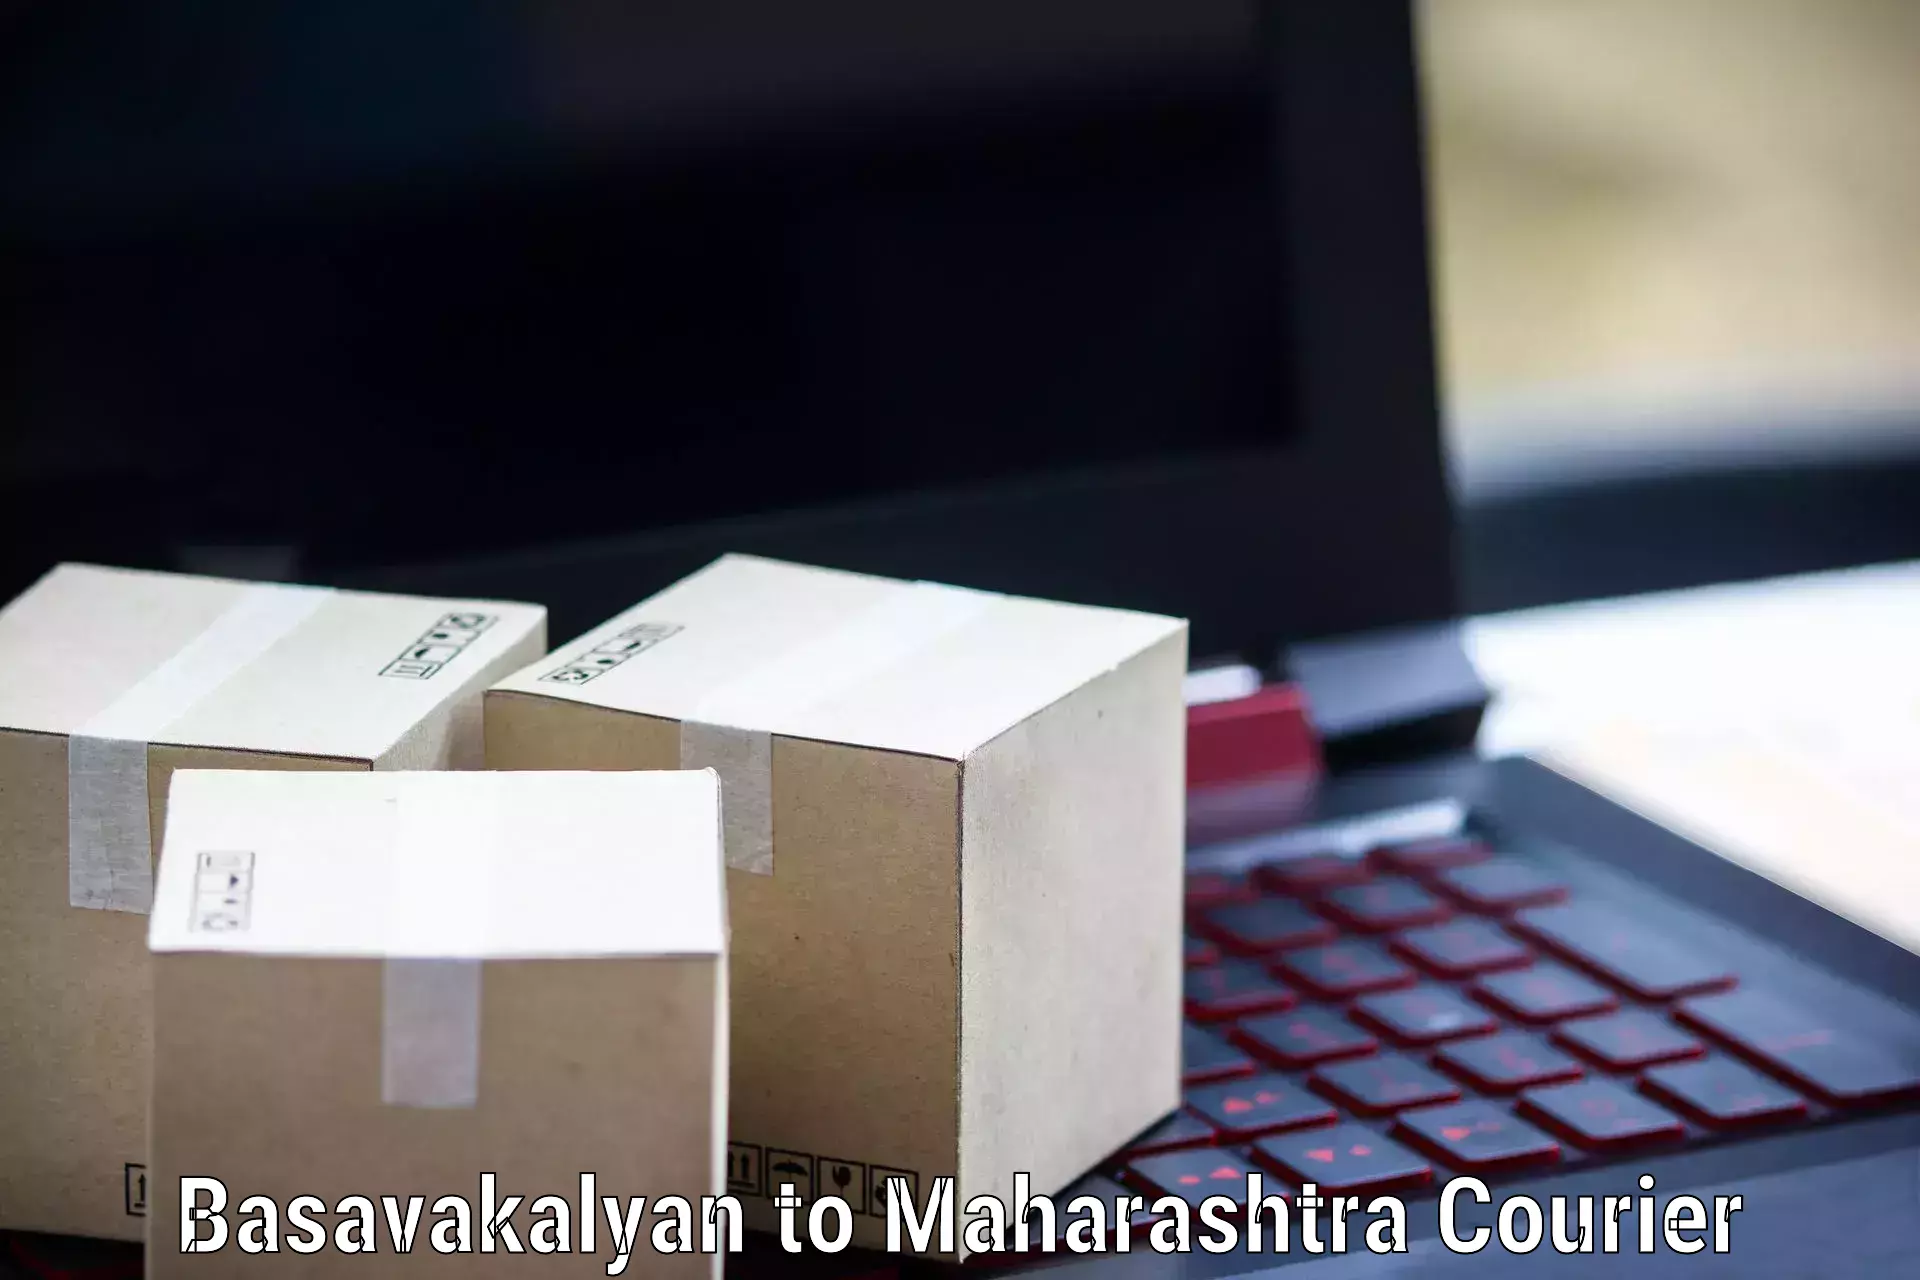 Seamless shipping experience Basavakalyan to Sindhudurg